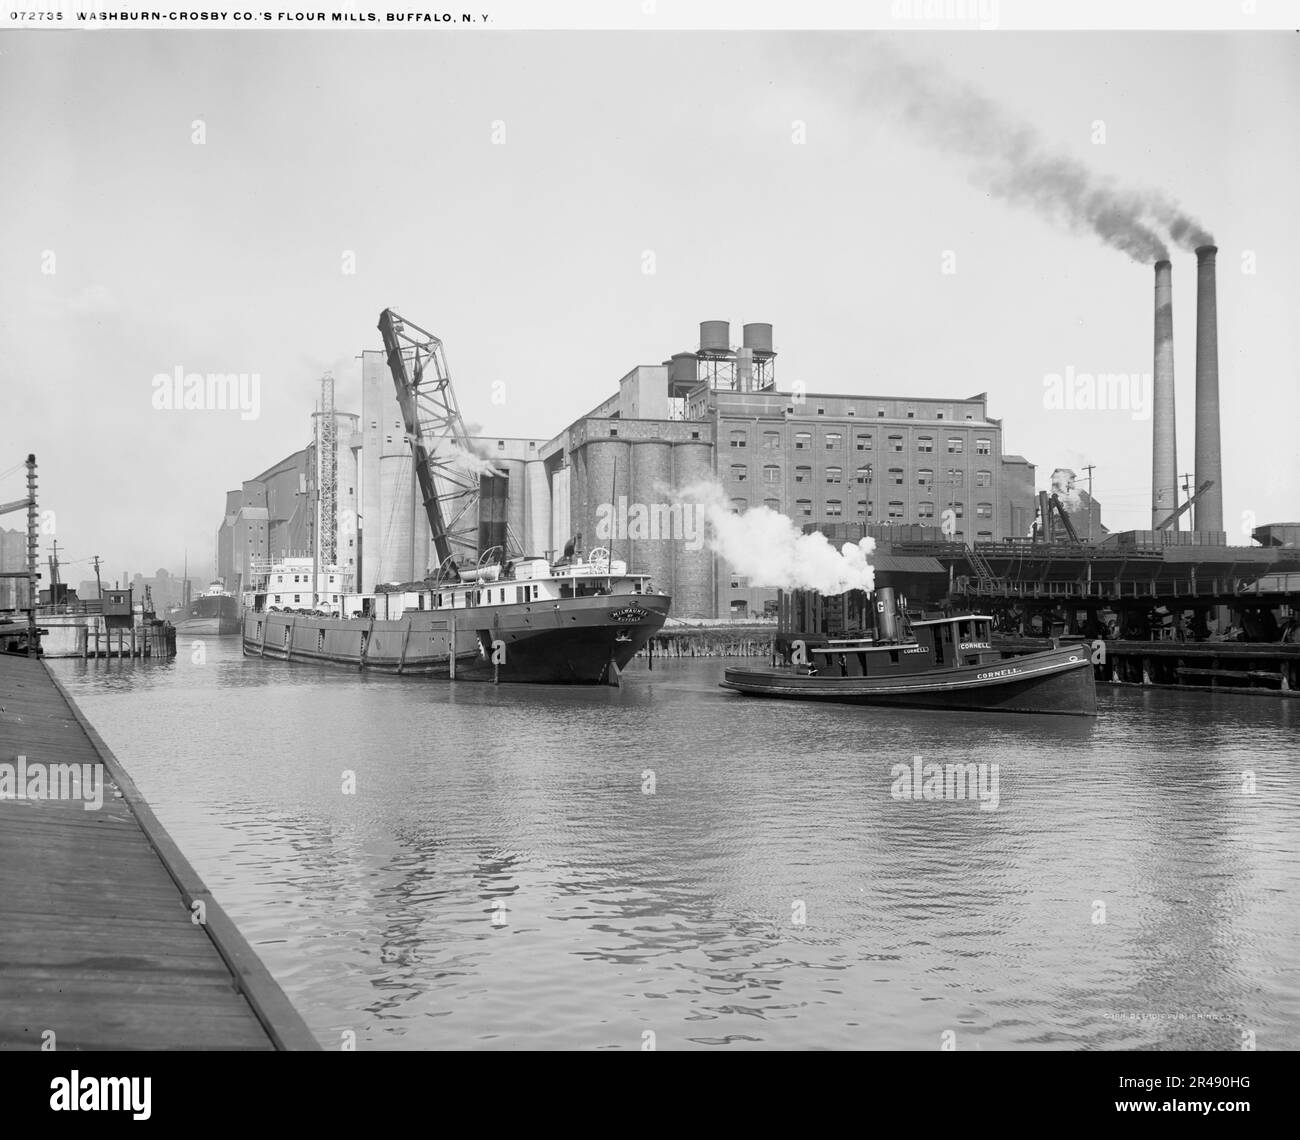 Washburn-Crosby Co.'s Flour Mills, Buffalo, N. Y., c.between 1910 und 1920. "Milwaukee von Buffalo" auf einem Frachtschiff, "Cornell" auf einem Schlepper. Stockfoto